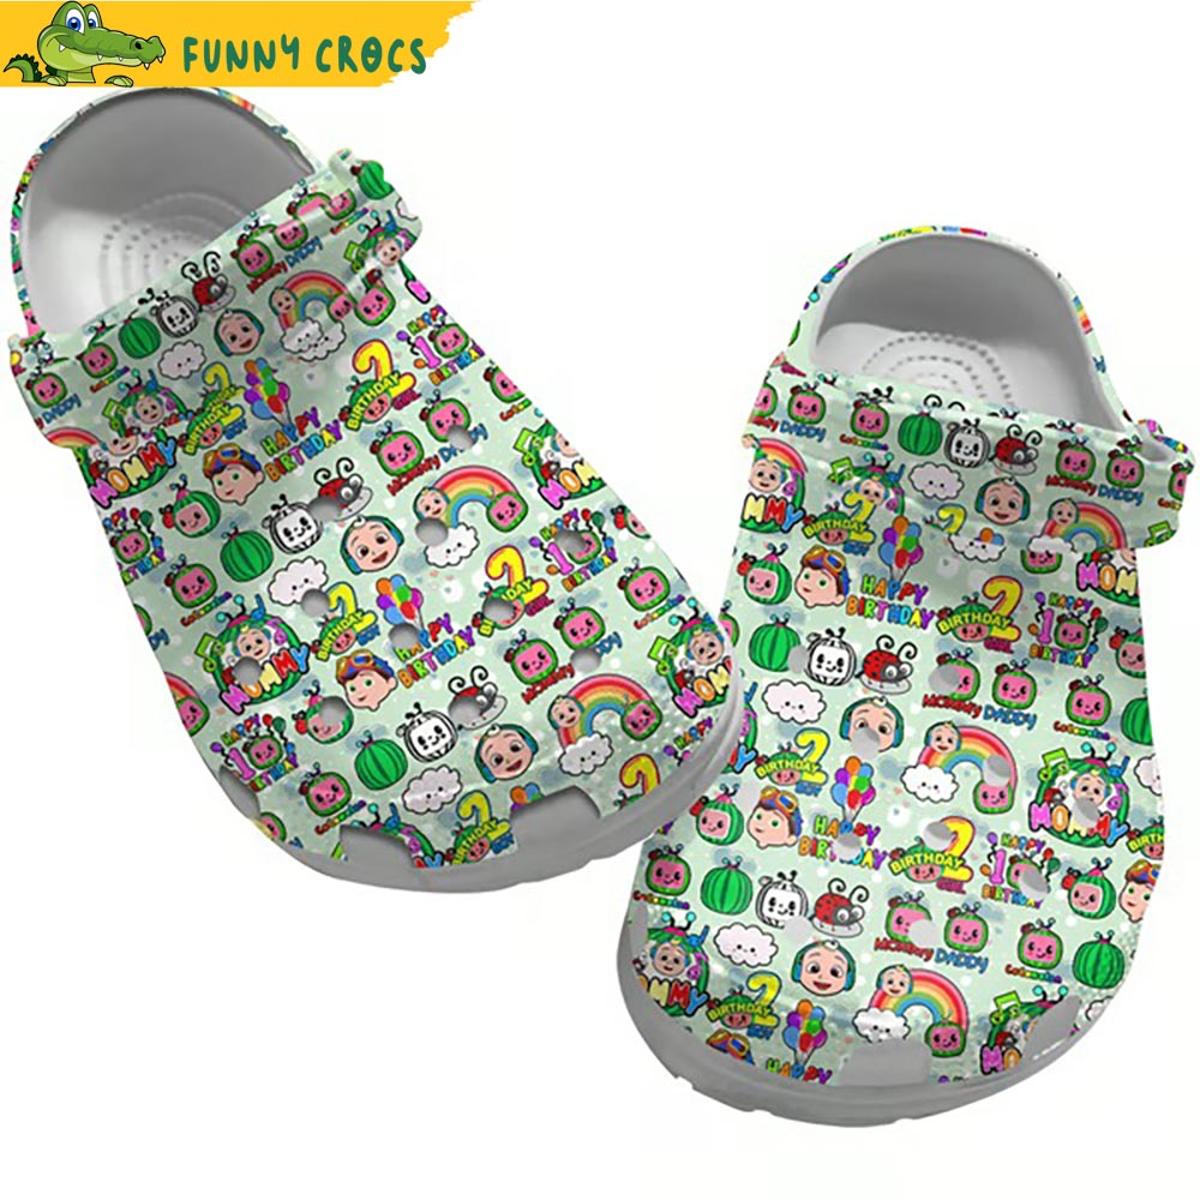 Cocomelon Blippi Crocs Sandals